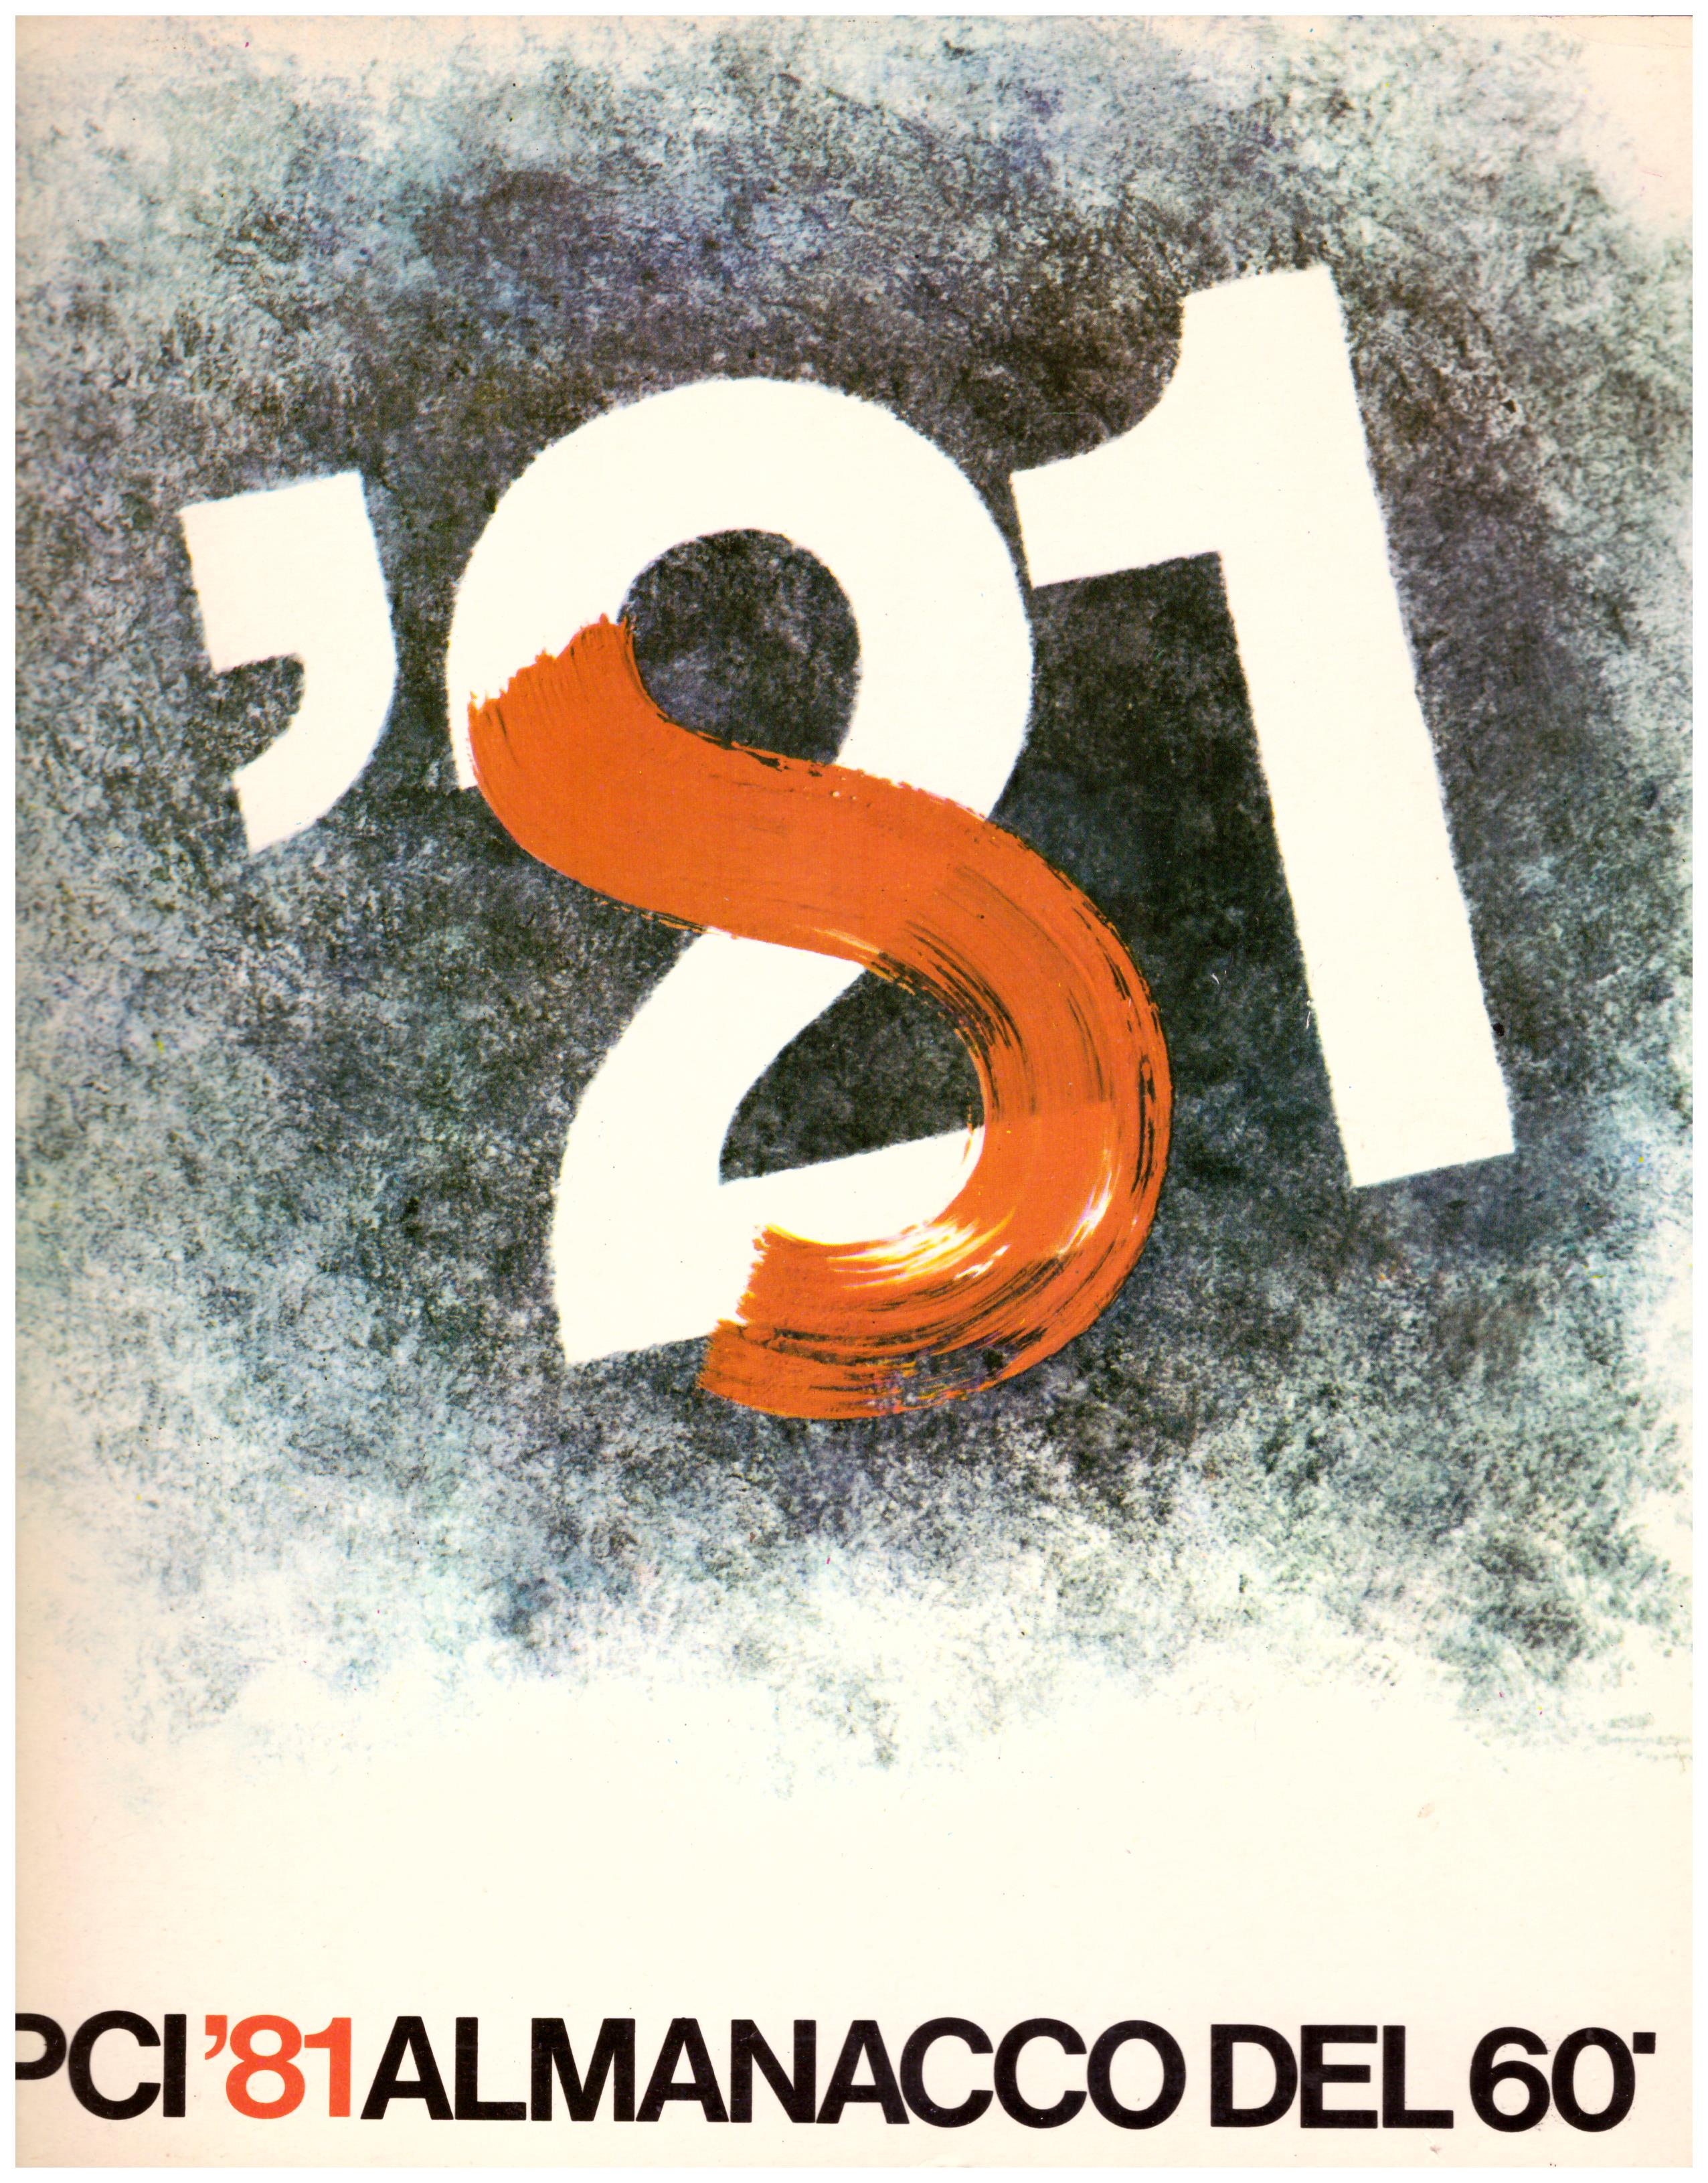 Titolo: PCI'81 almanacco del 60 Autore: AA.VV.  Editore: Fratelli Spada, Ciampino 1980